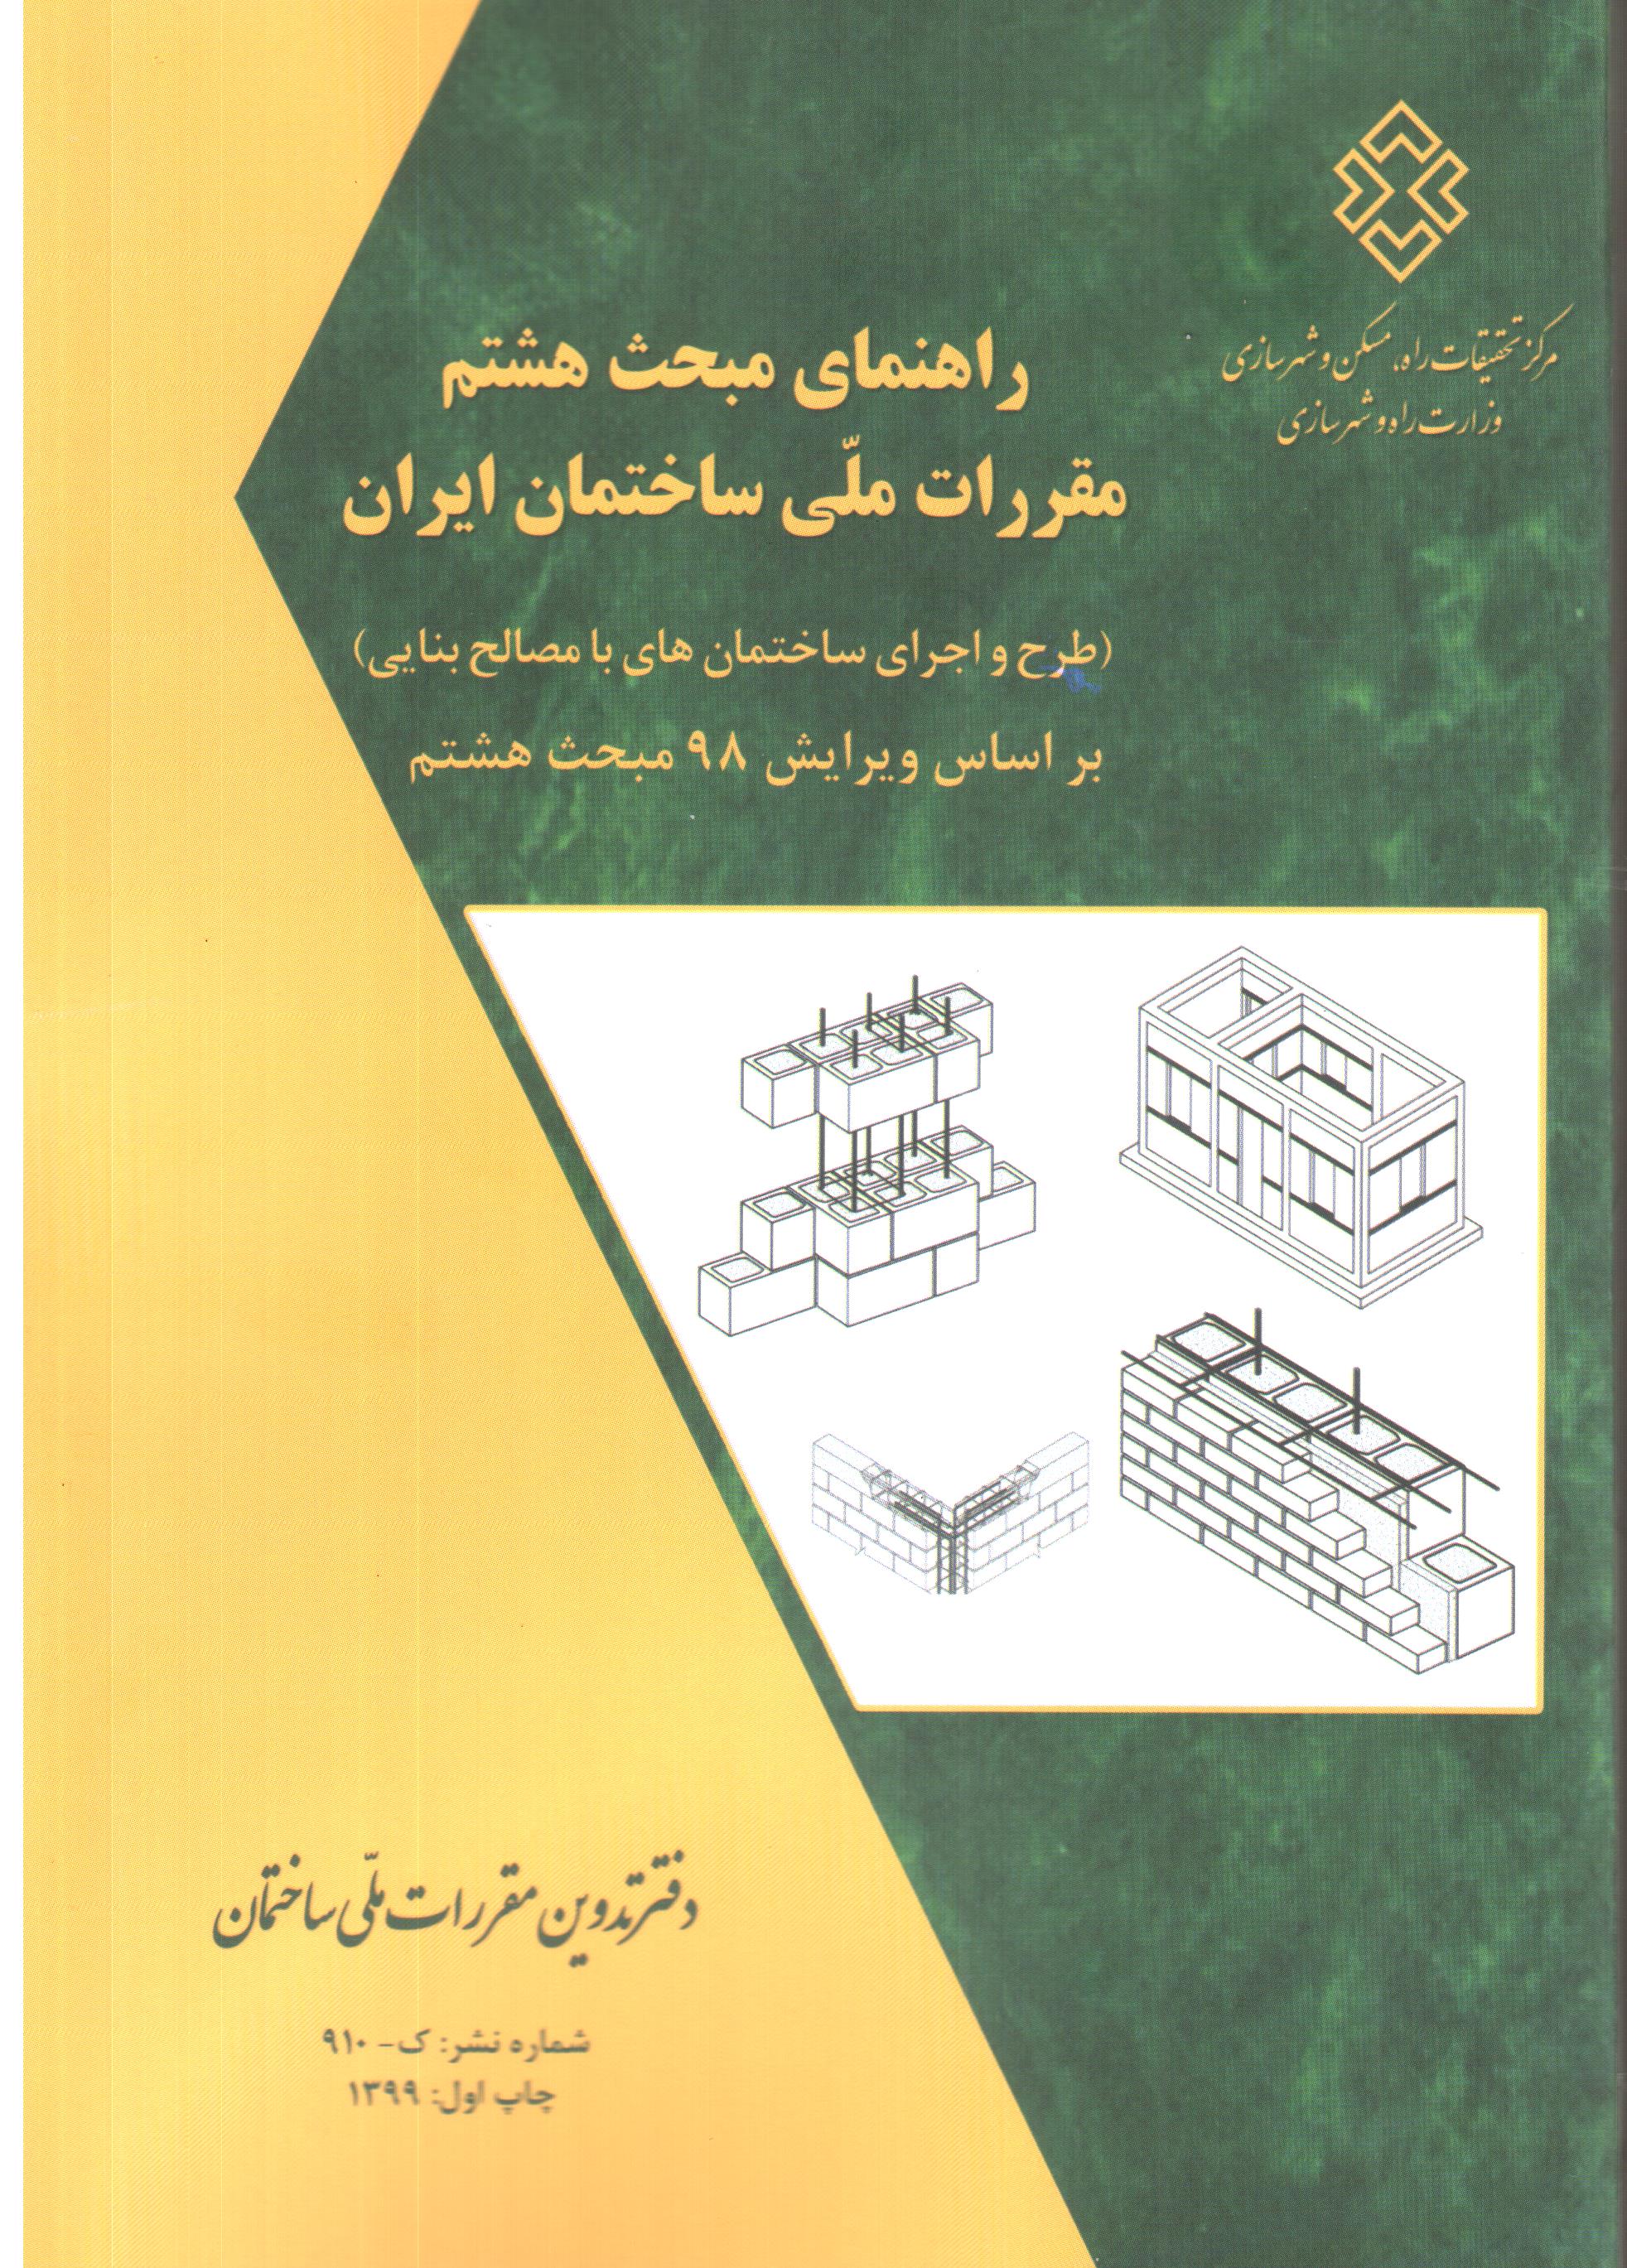 راهنمای مبحث هشتم مقررات ملی ساختمان ایران براساس ویرایش 98مبحث هشتم